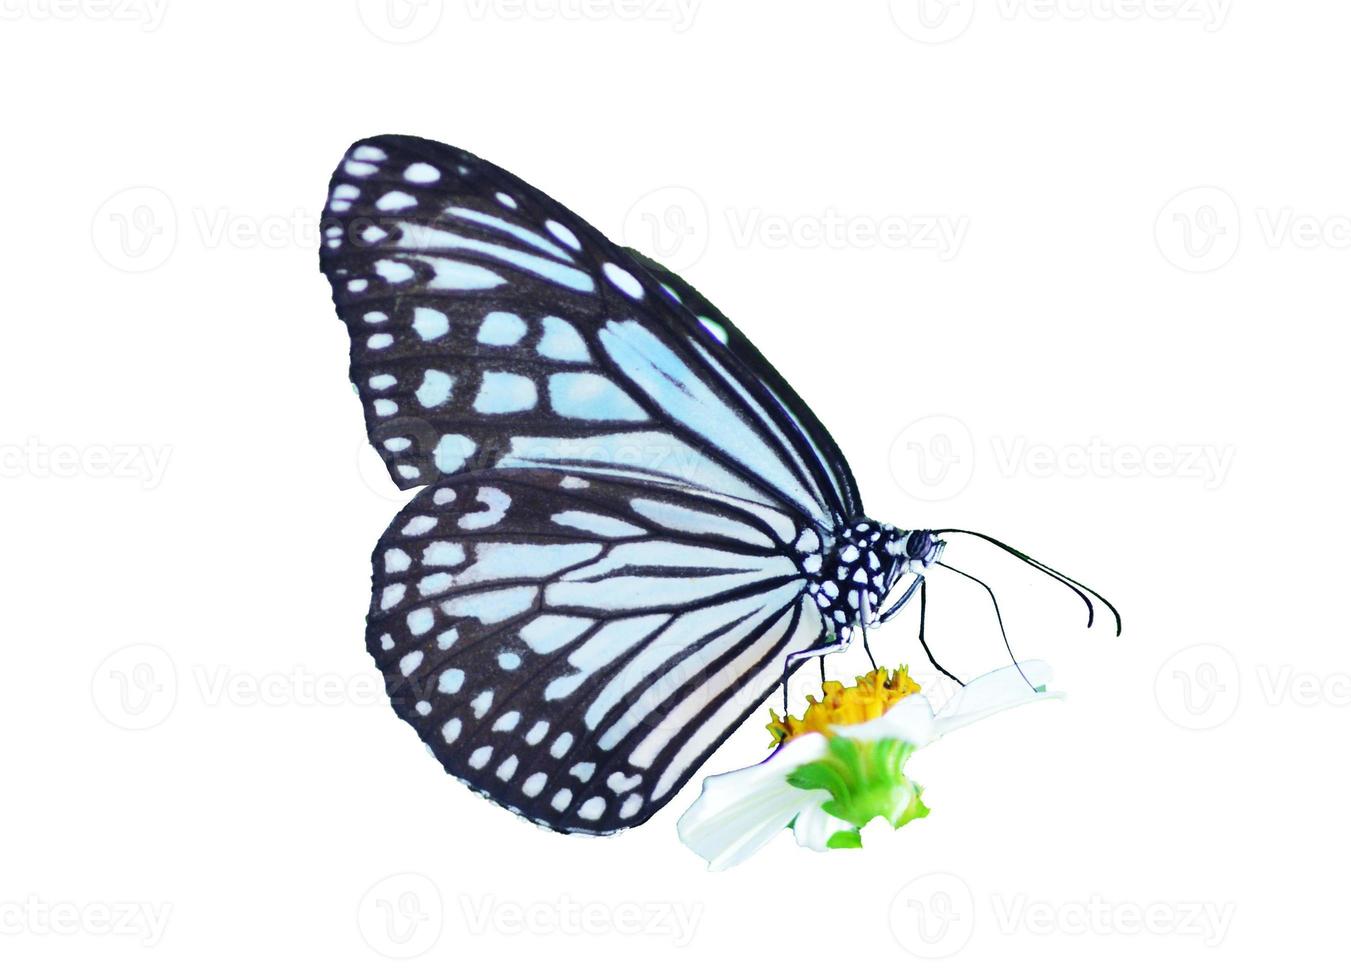 papillon sur fond blanc facile à utiliser dans les projets. photo